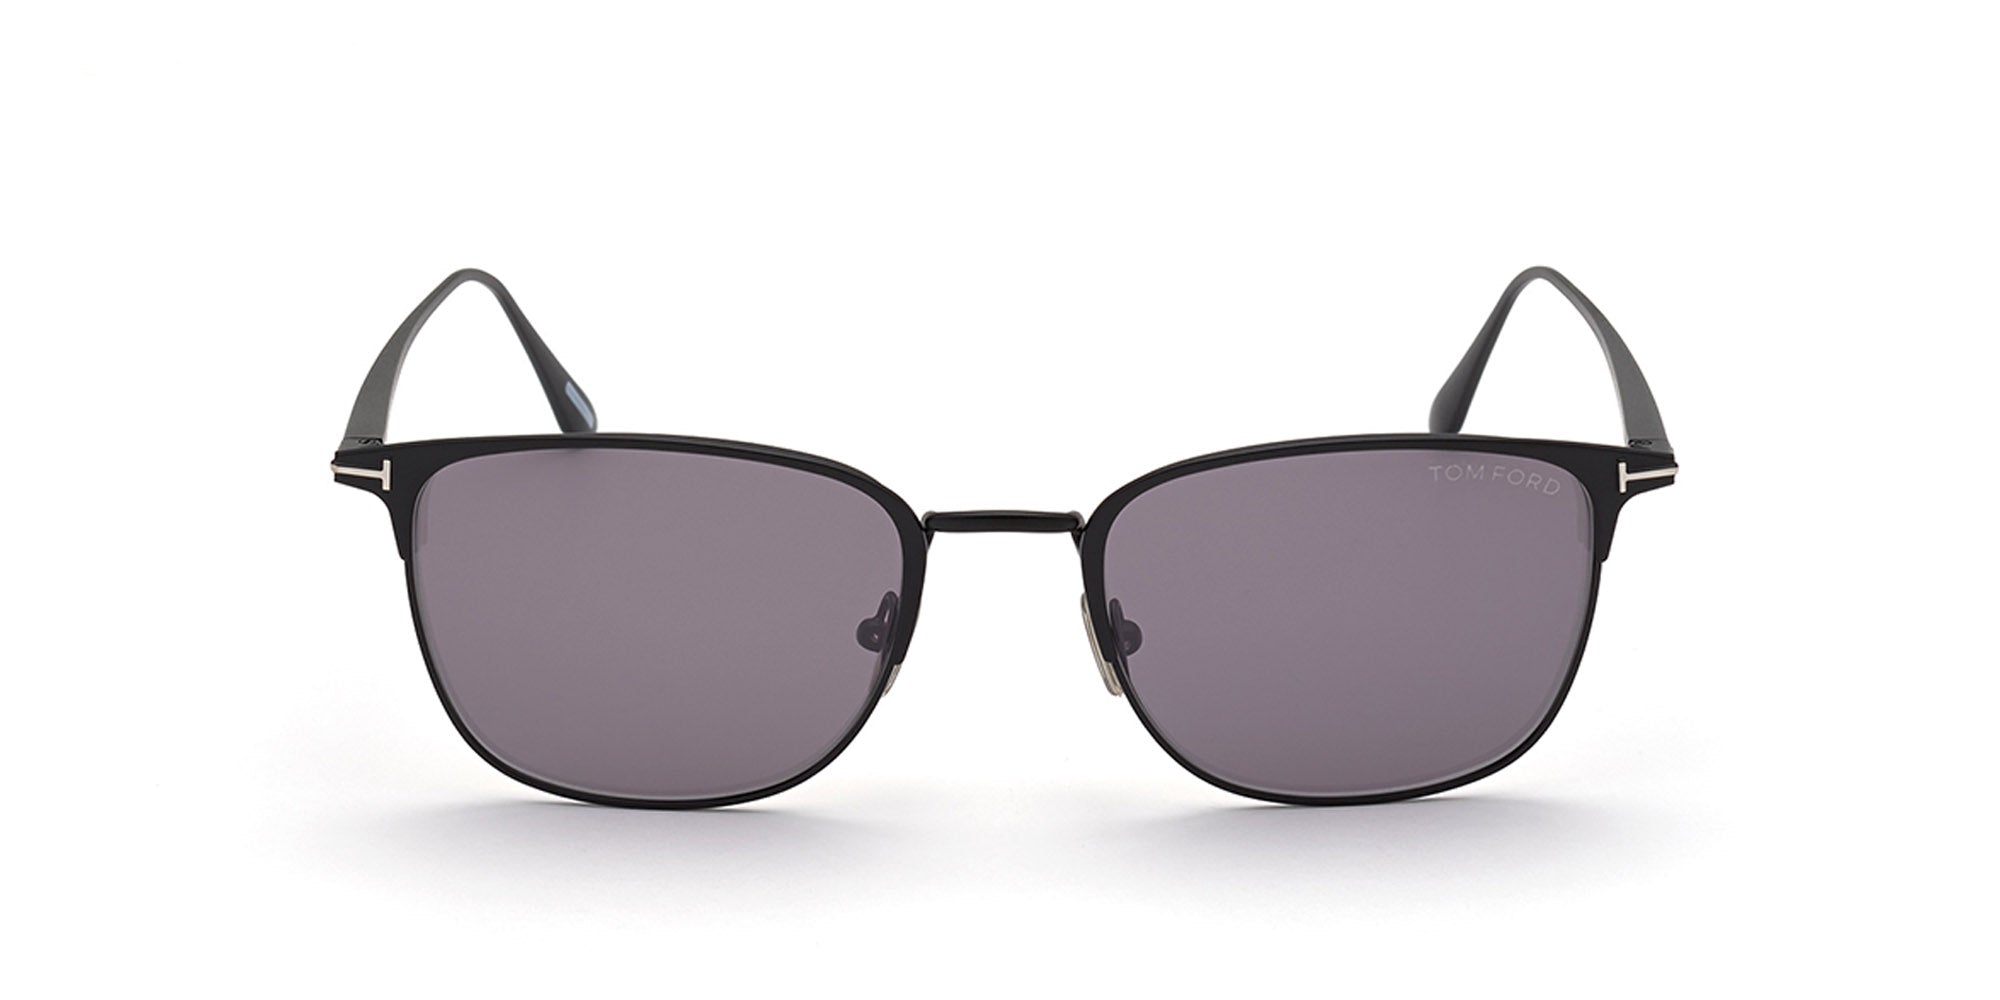 Tom Ford LIV TF851 Square Sunglasses | Fashion Eyewear